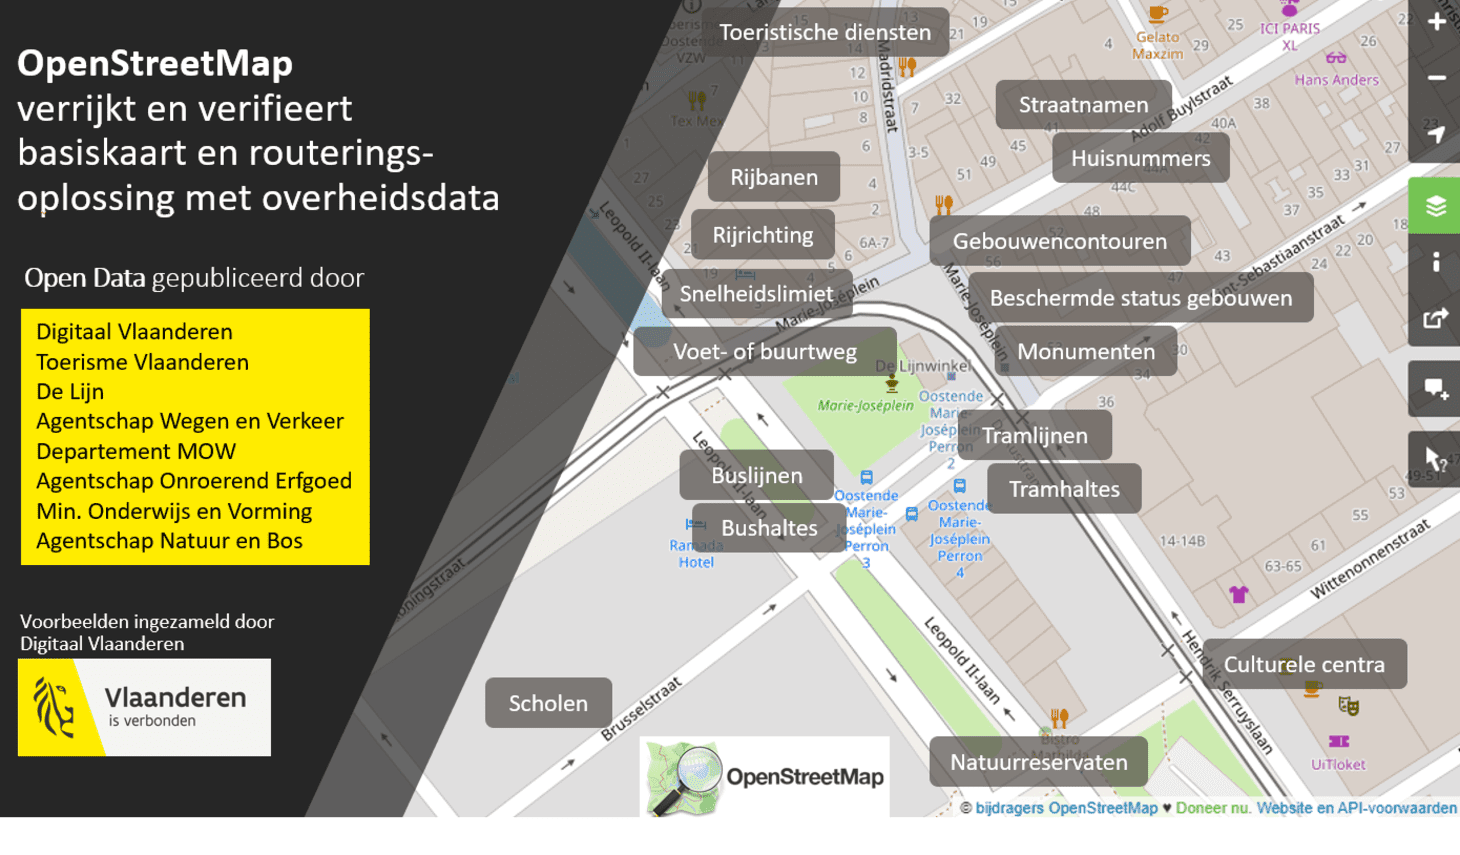 OpenStreetMap verrijkt en verifieert basiskaart en routeringsoplossing met overheidsdata